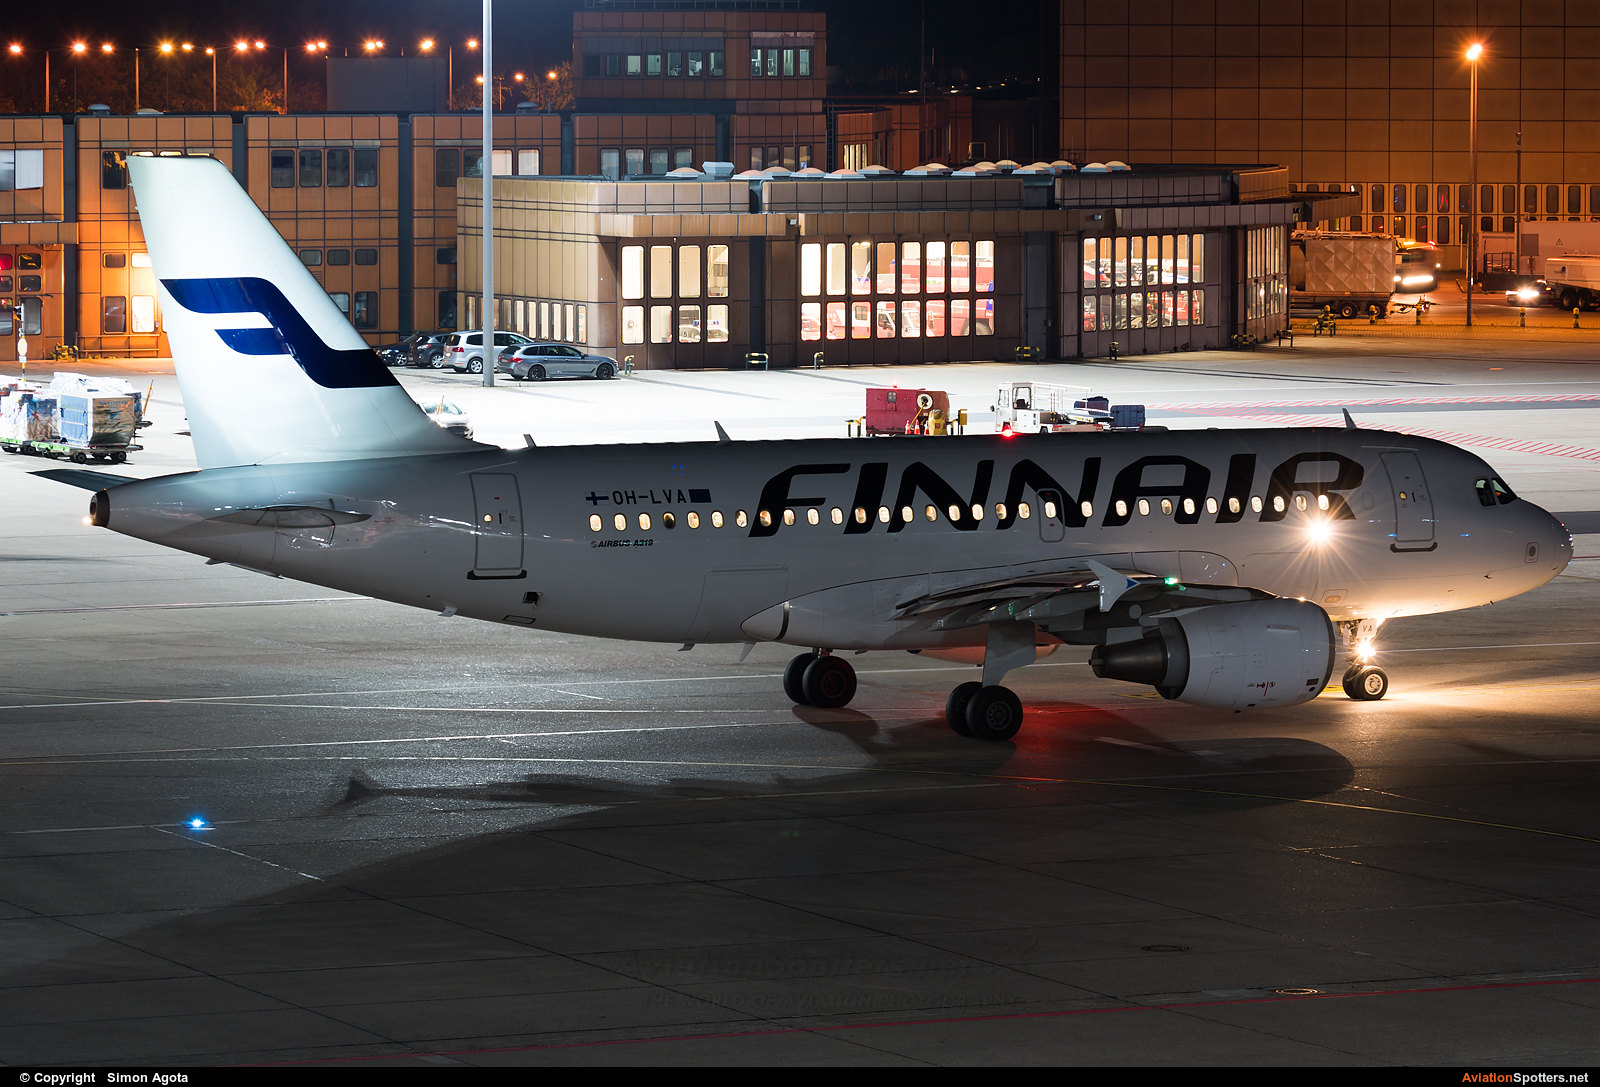 Finnair  -  A319  (OH-LVA) By Simon Agota (goti80)